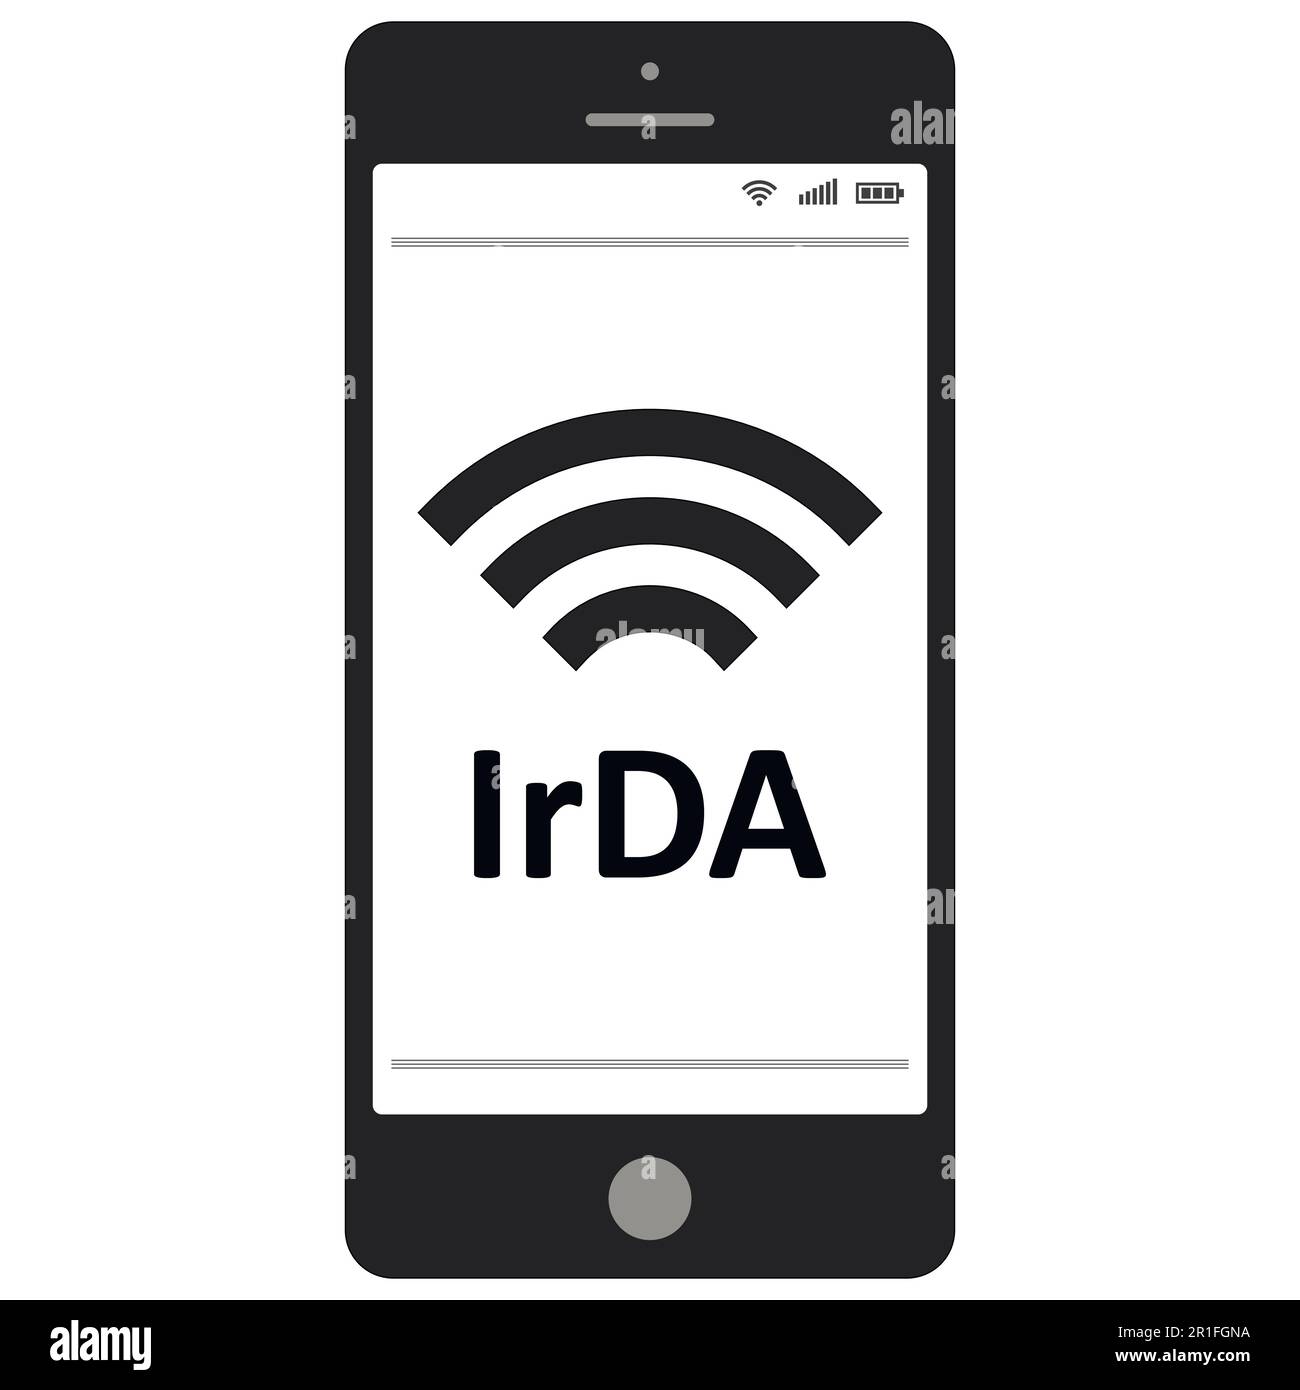 Telefono cellulare IrDA associazione dati infrarossi Immagine e Vettoriale  - Alamy